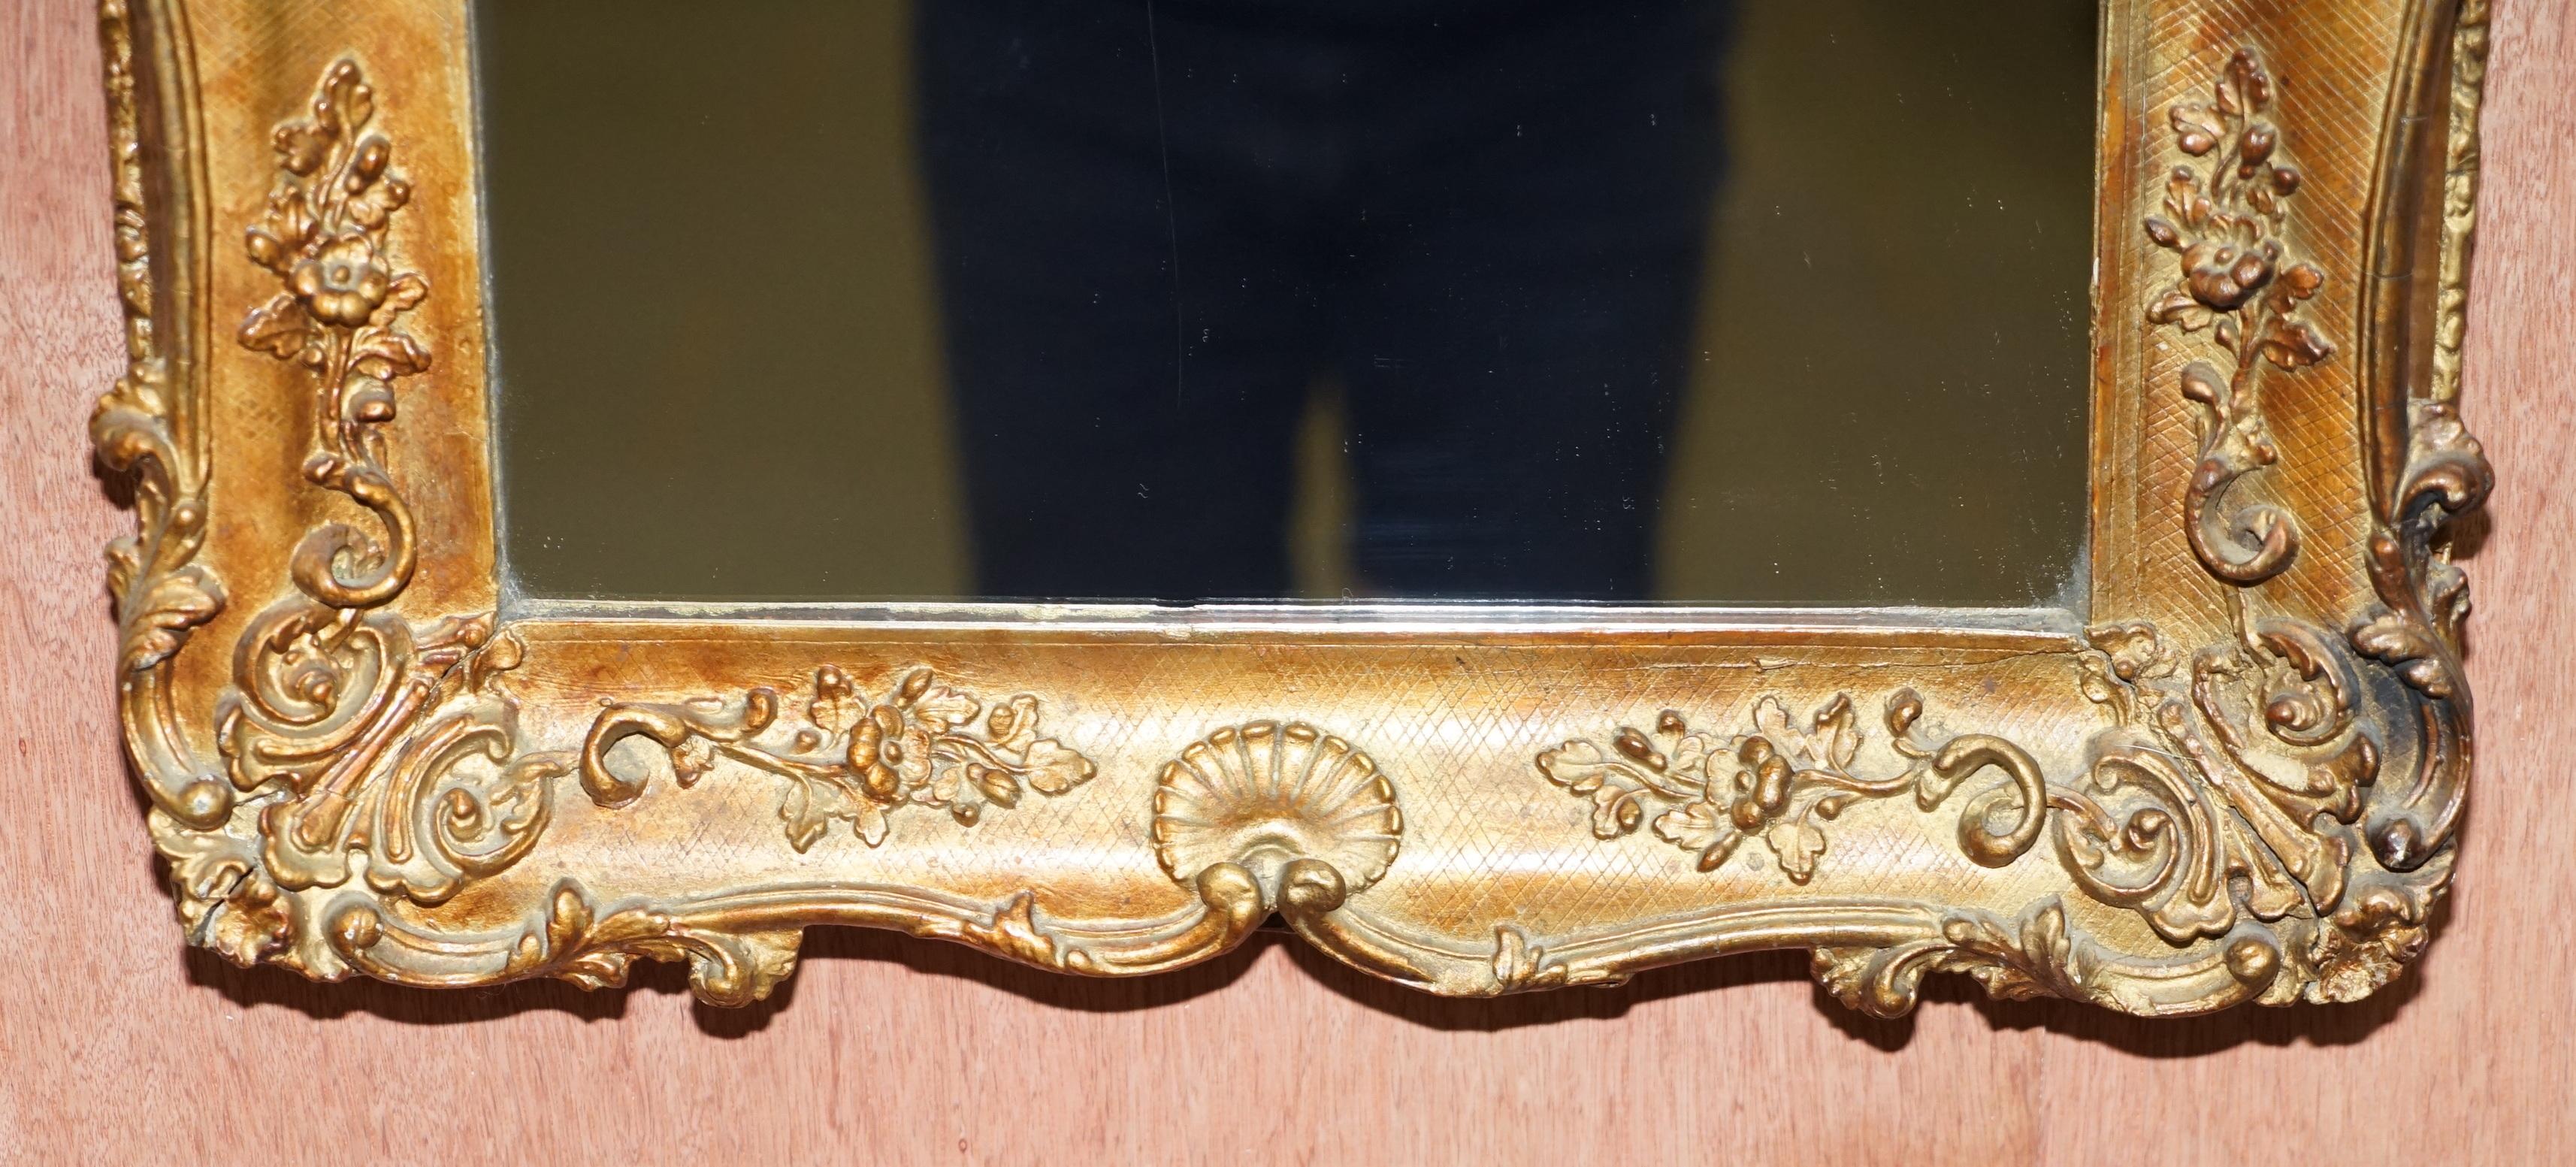 Nous sommes ravis d'offrir à la vente ce superbe miroir français encadré en bois doré et sculpté, vers 1880-1900

Un très beau miroir mural décoratif, clairement français, basé sur les premiers modèles rococo. Il s'agirait d'une petite taille par